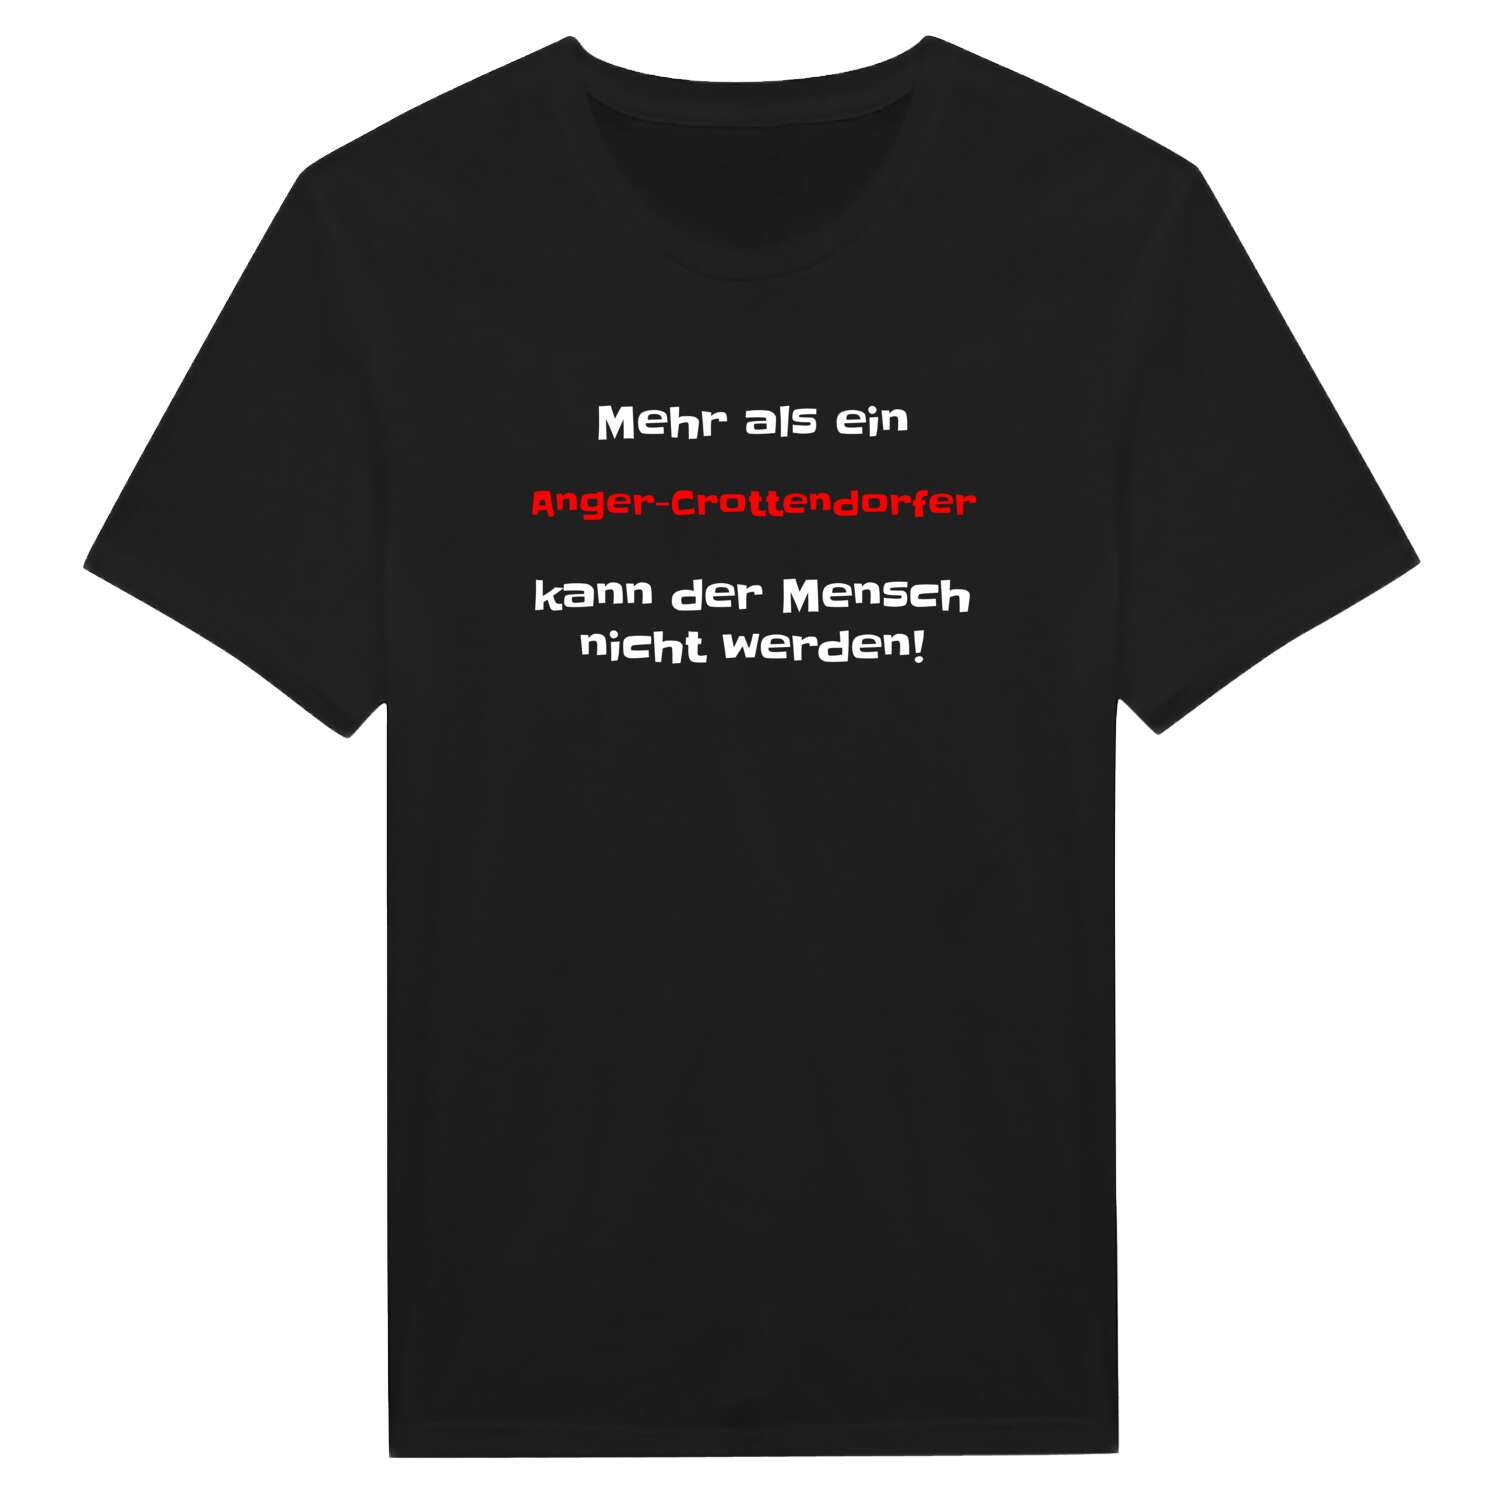 Anger-Crottendorf T-Shirt »Mehr als ein«